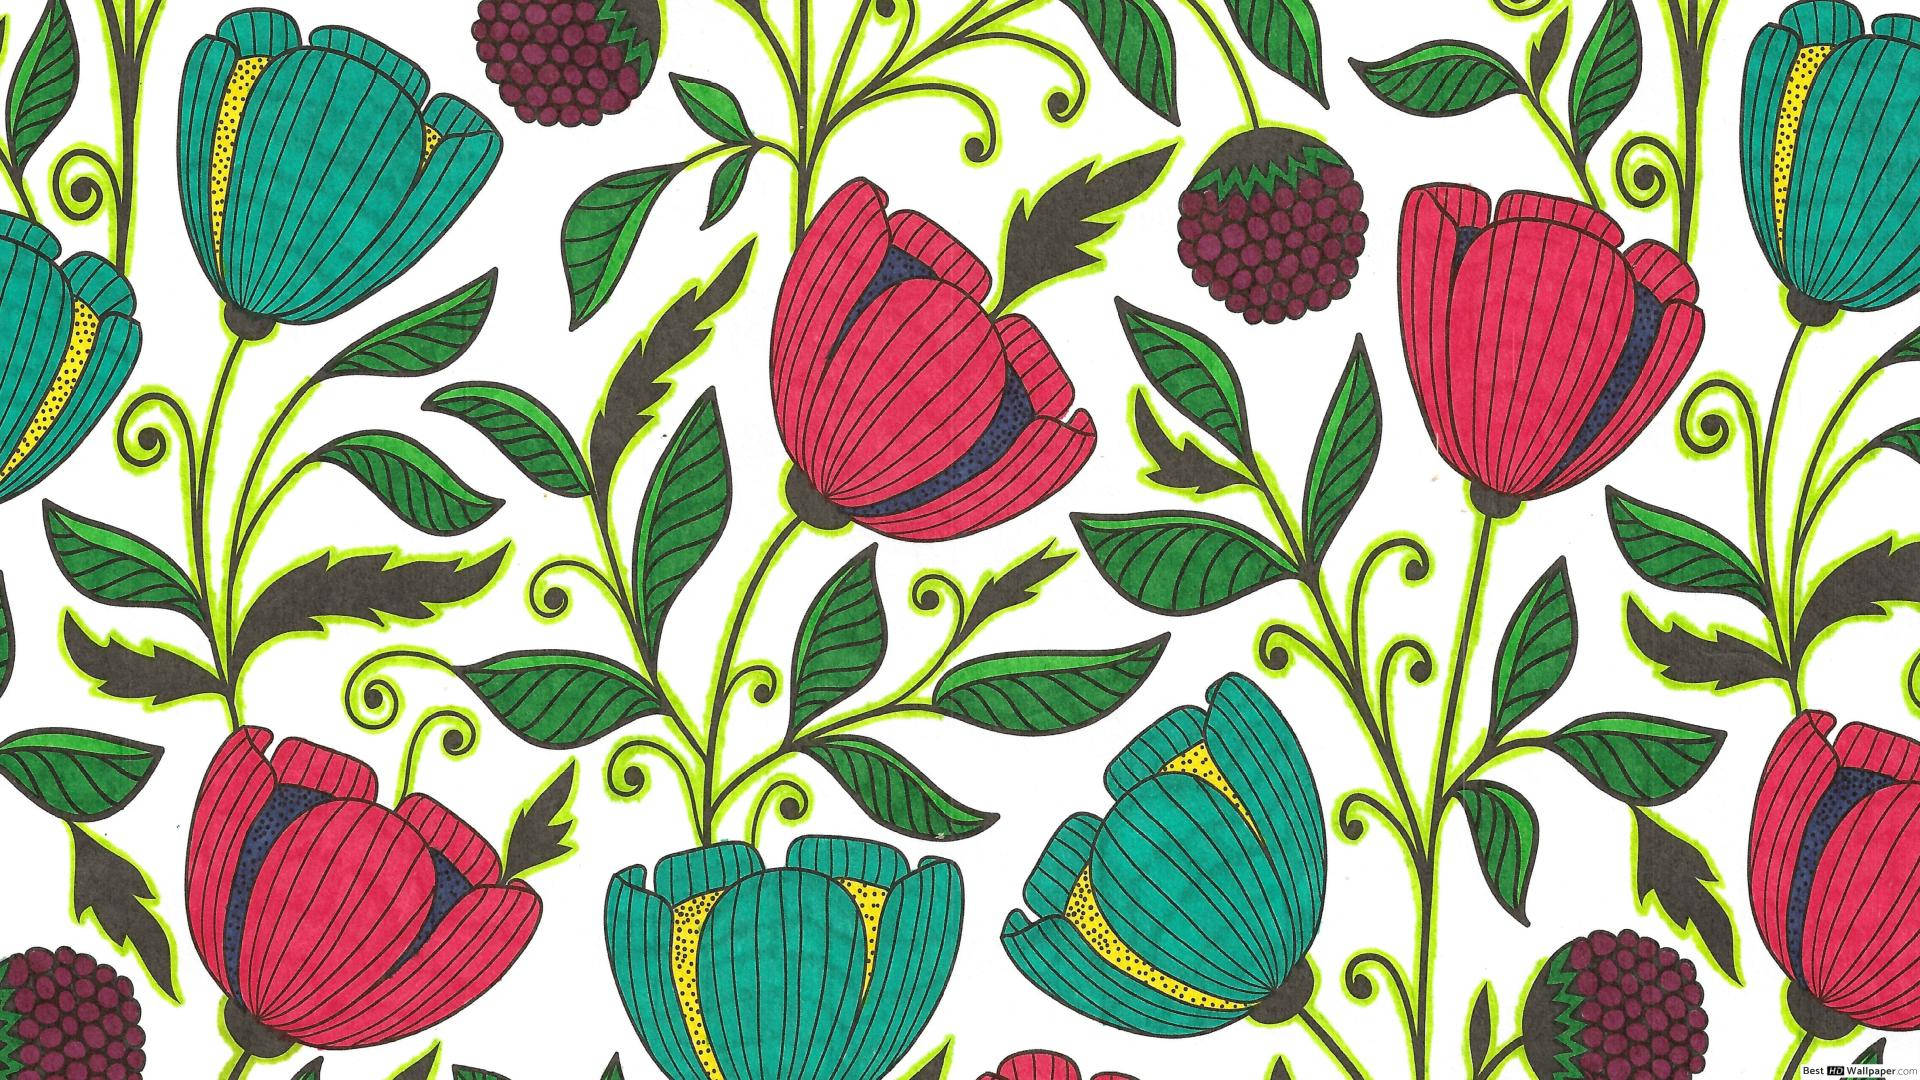 Tulip Inspired Folk Art Design